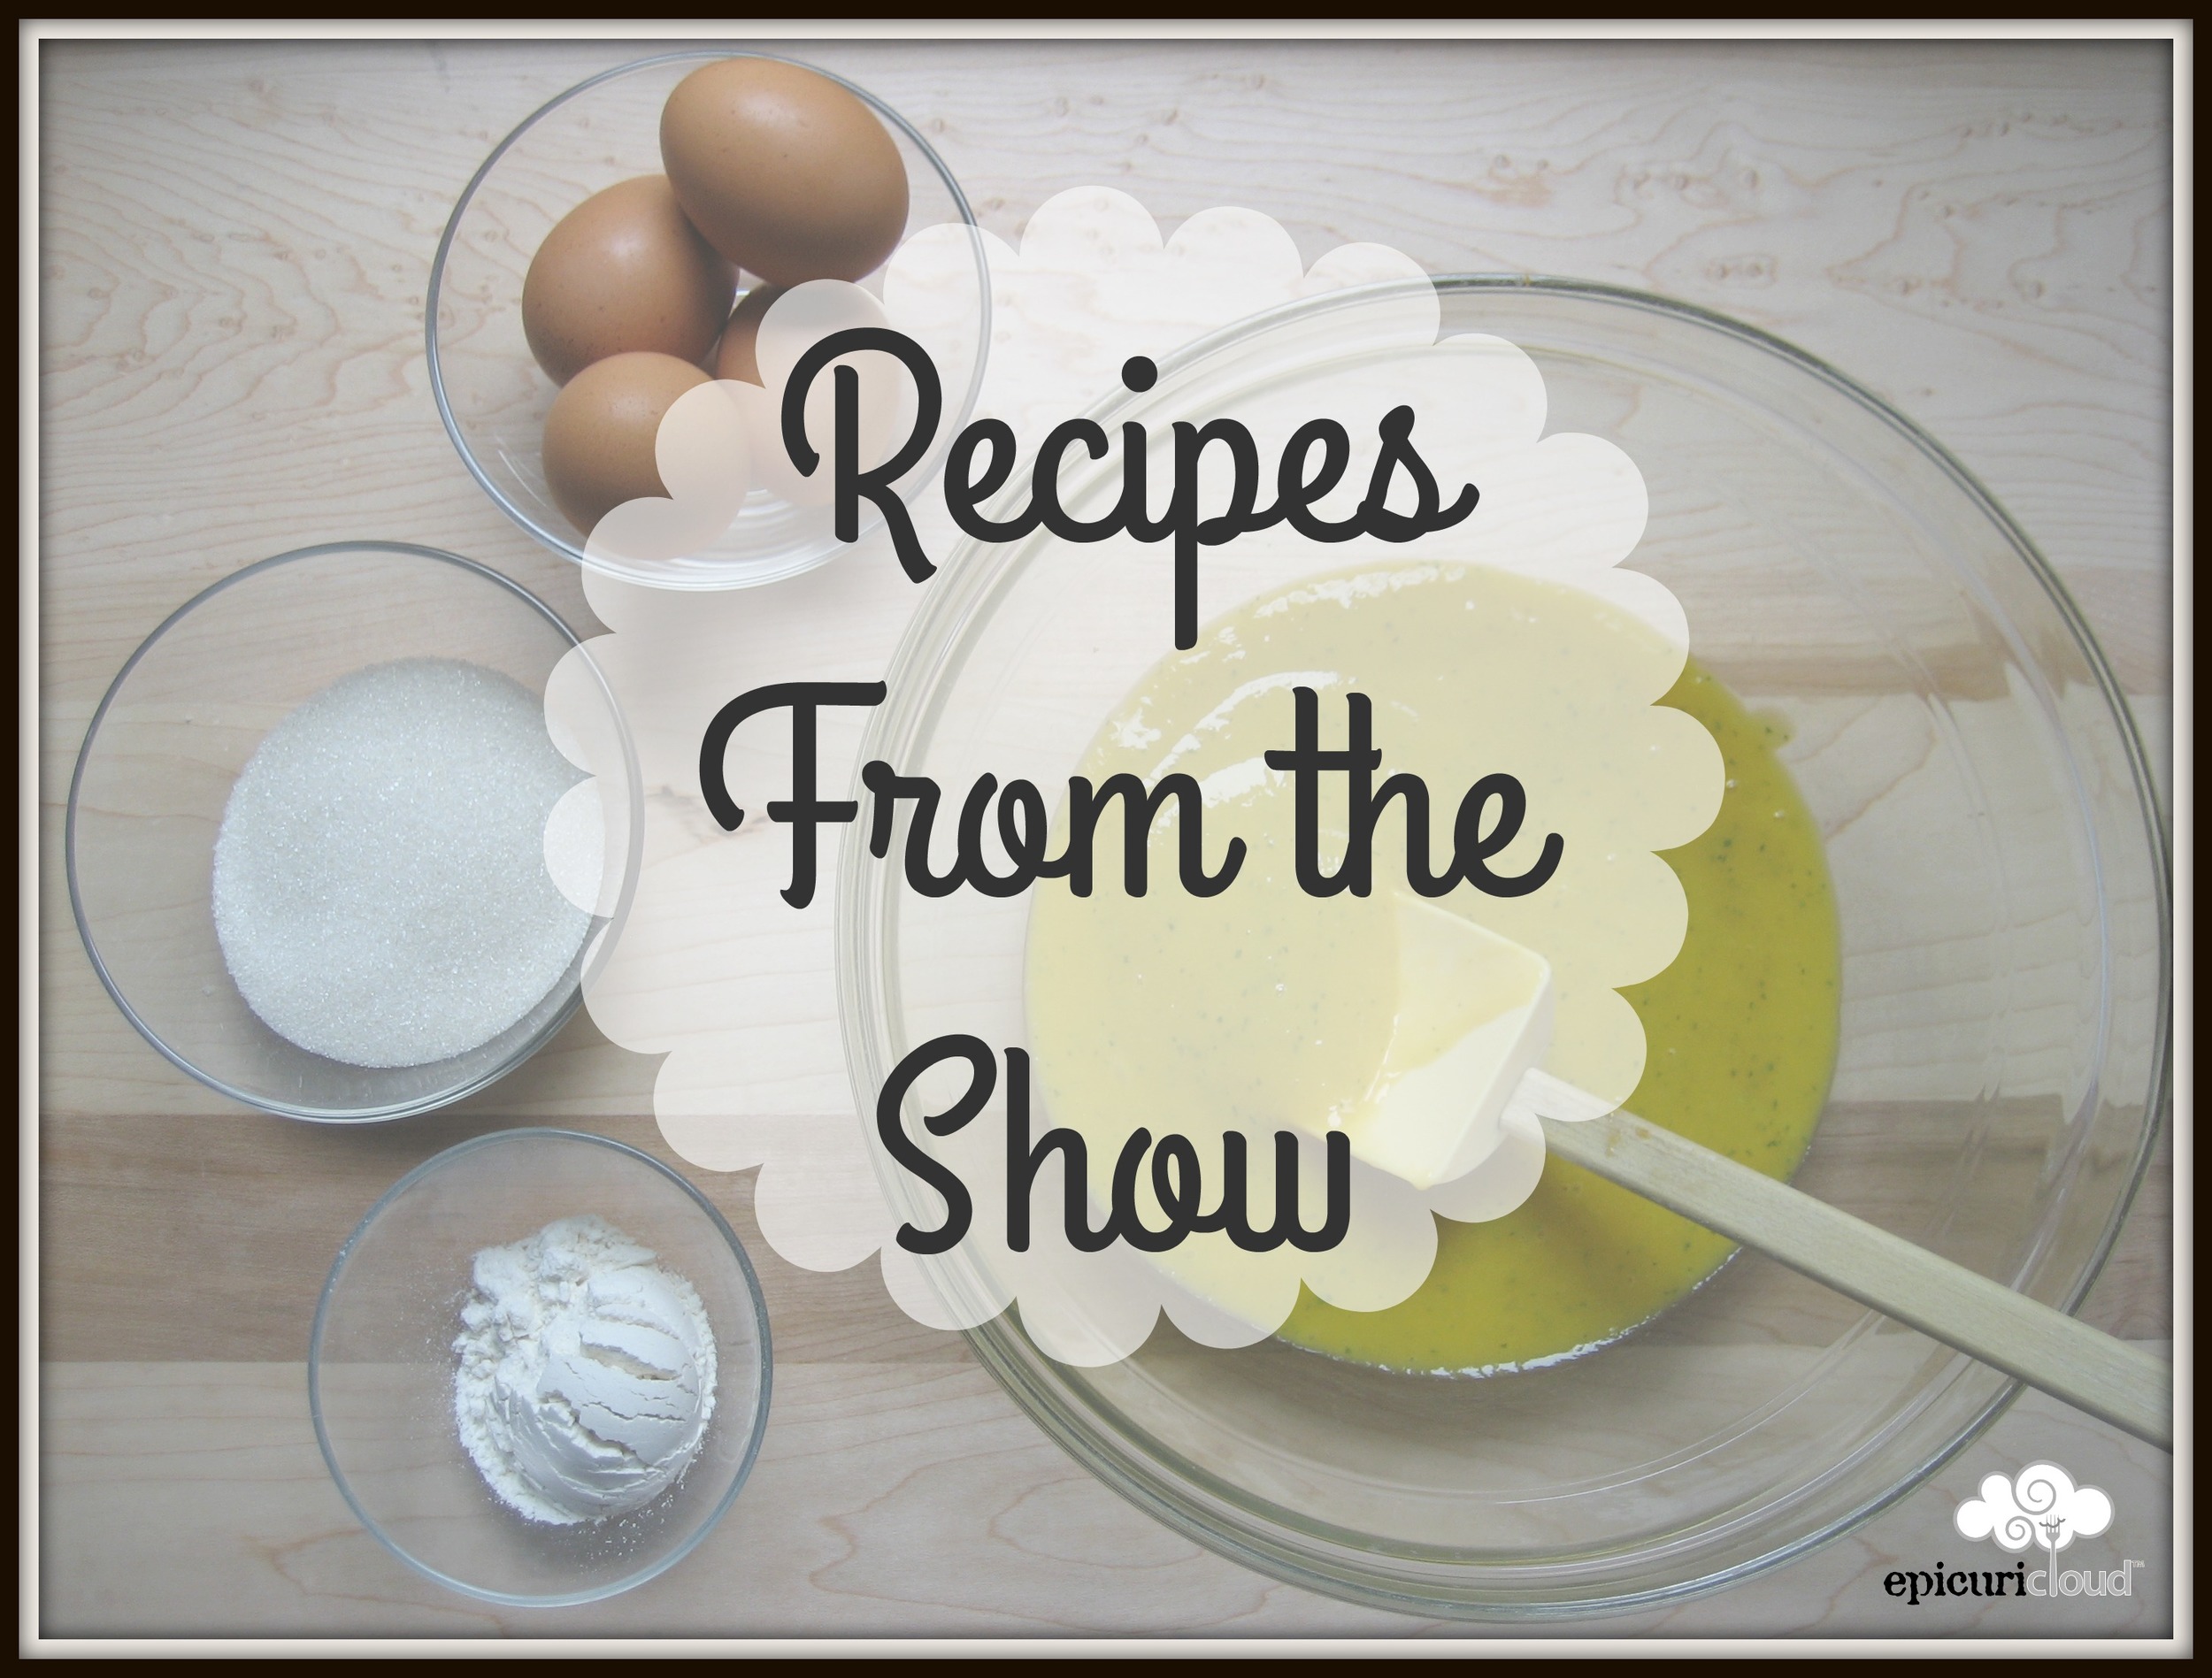 KitchenAid Shave Ice Recipe Ideas & Tips, epicuricloud (Tina Verrelli), Recipe